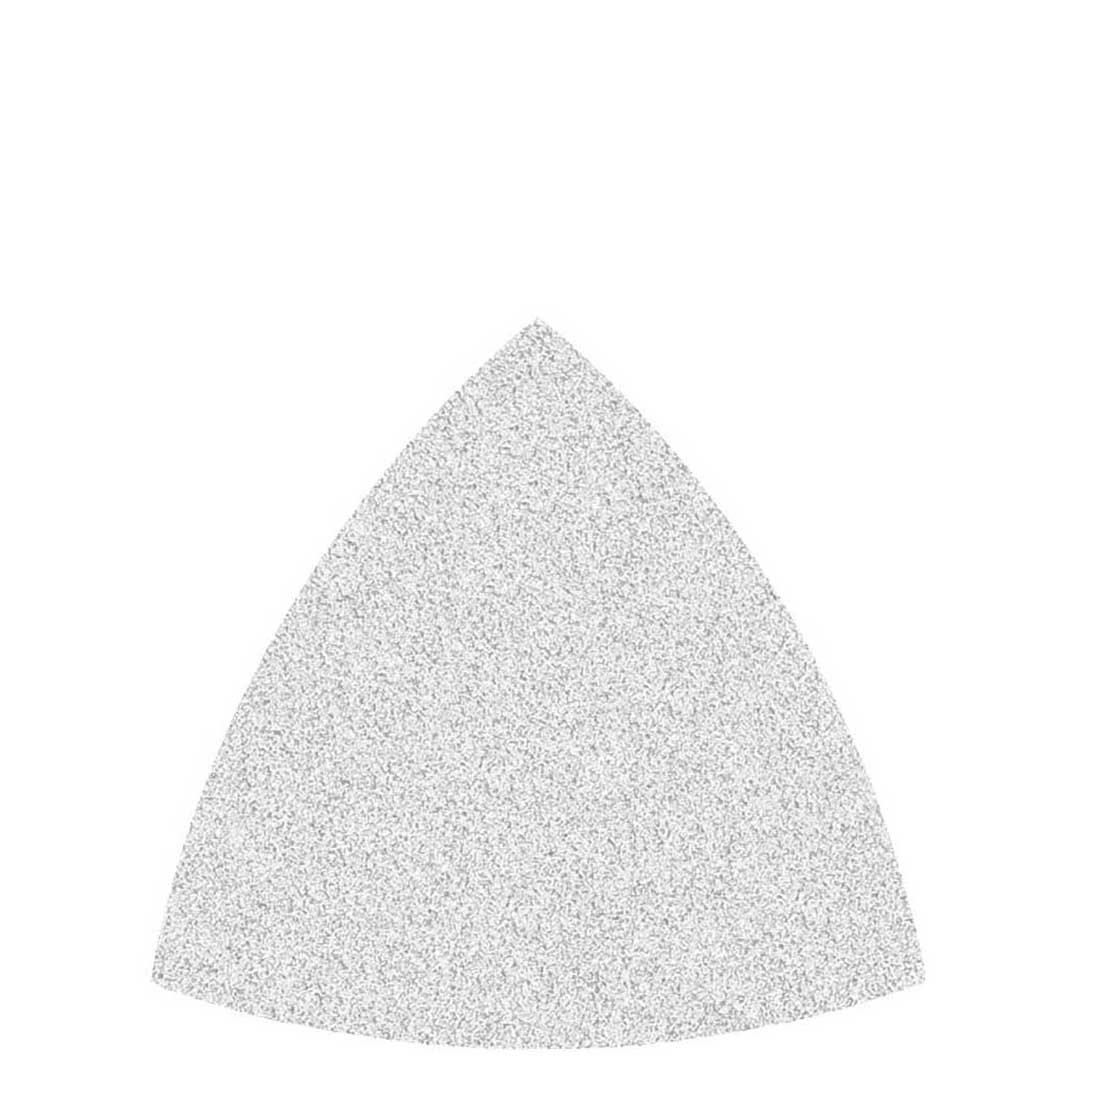 Carte abrasive velcrate MioTools per levigatrici a delta, G40–400, 82 mm / corindone normale con stearato